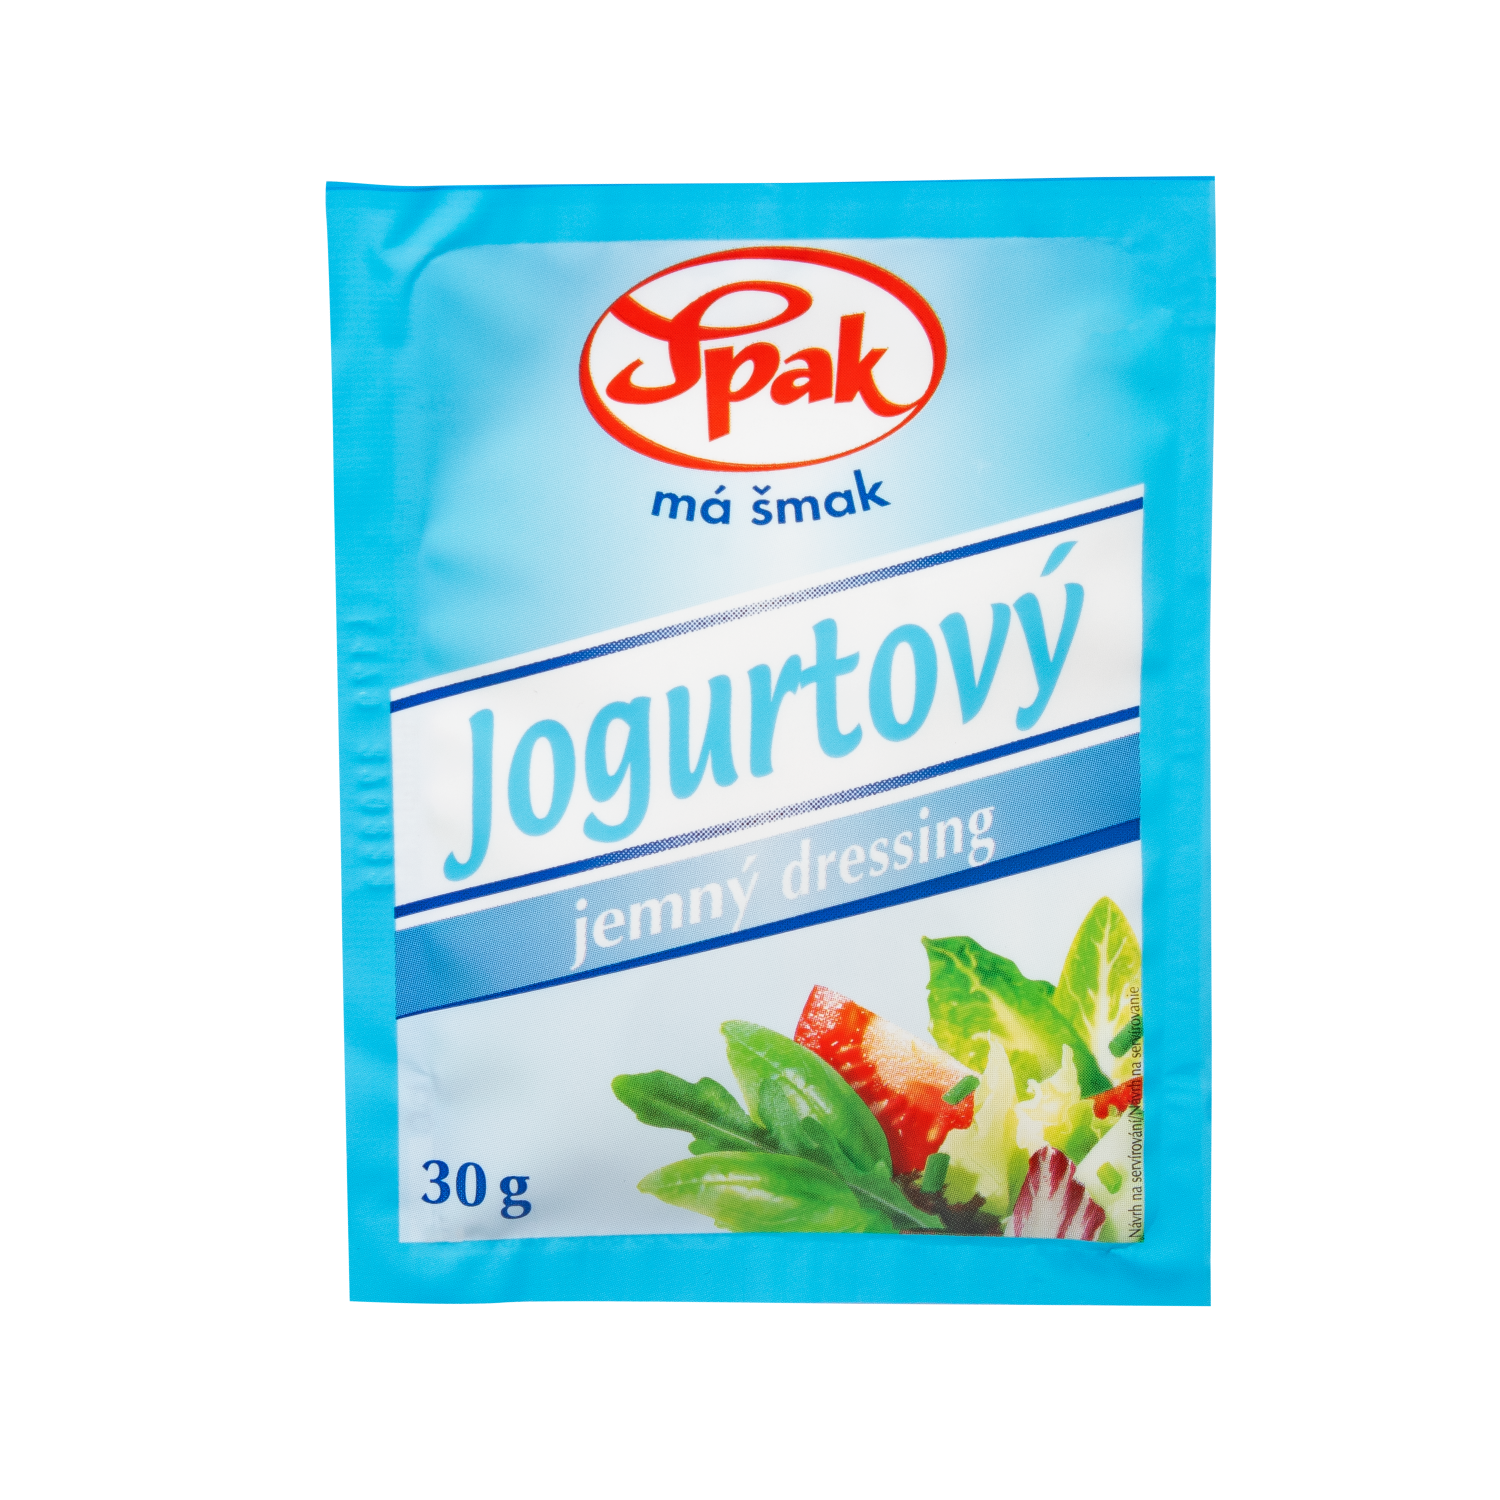 Jogurtovy-jemny-dressing-30g-1